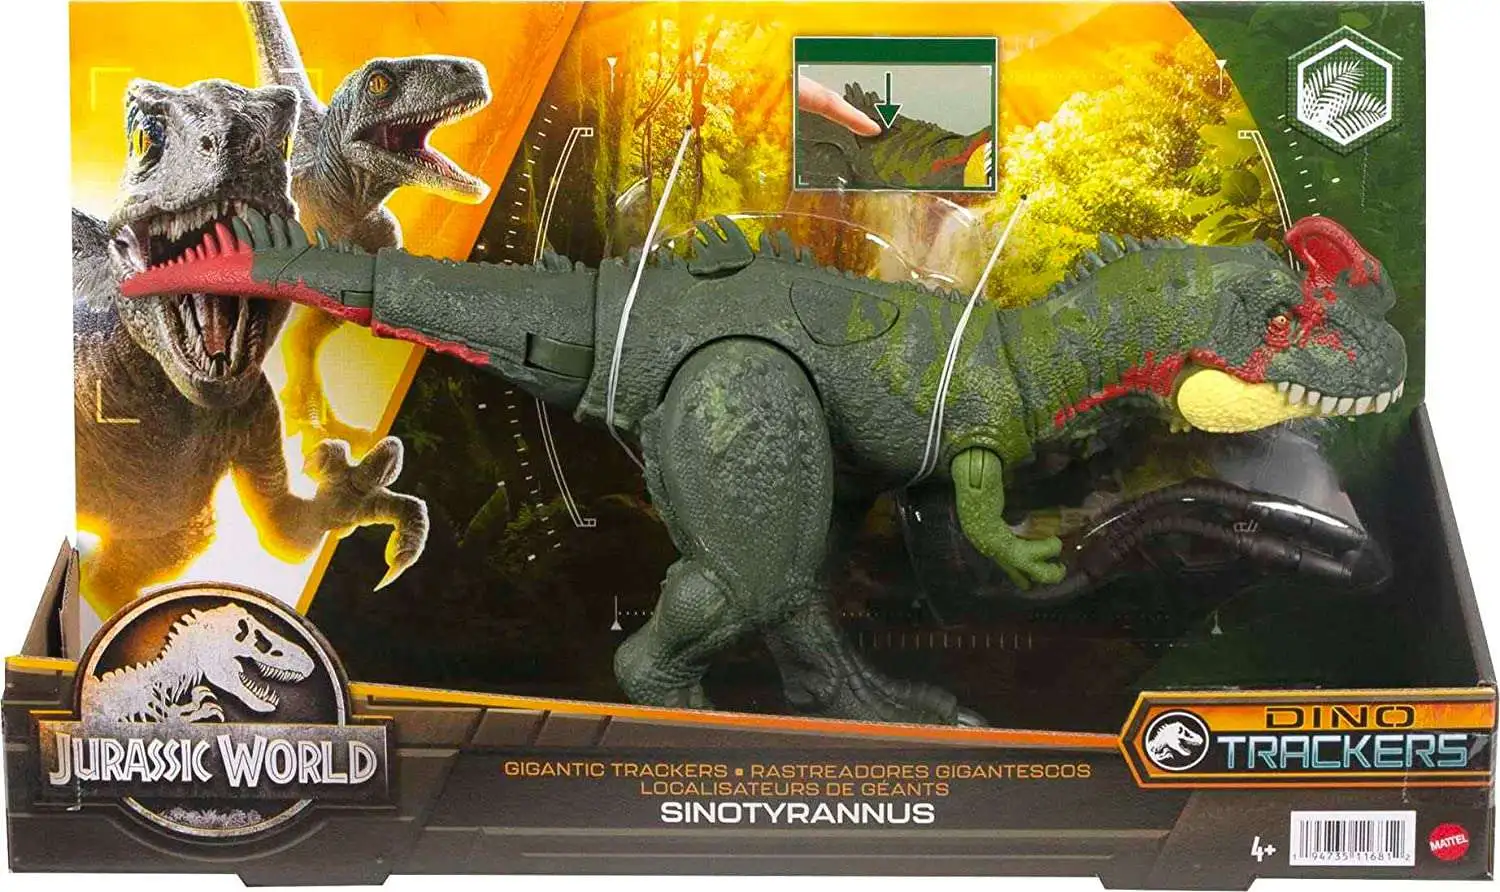 Jurassic World Dino Trackers Sinotyrannus Action Figure Gigantic